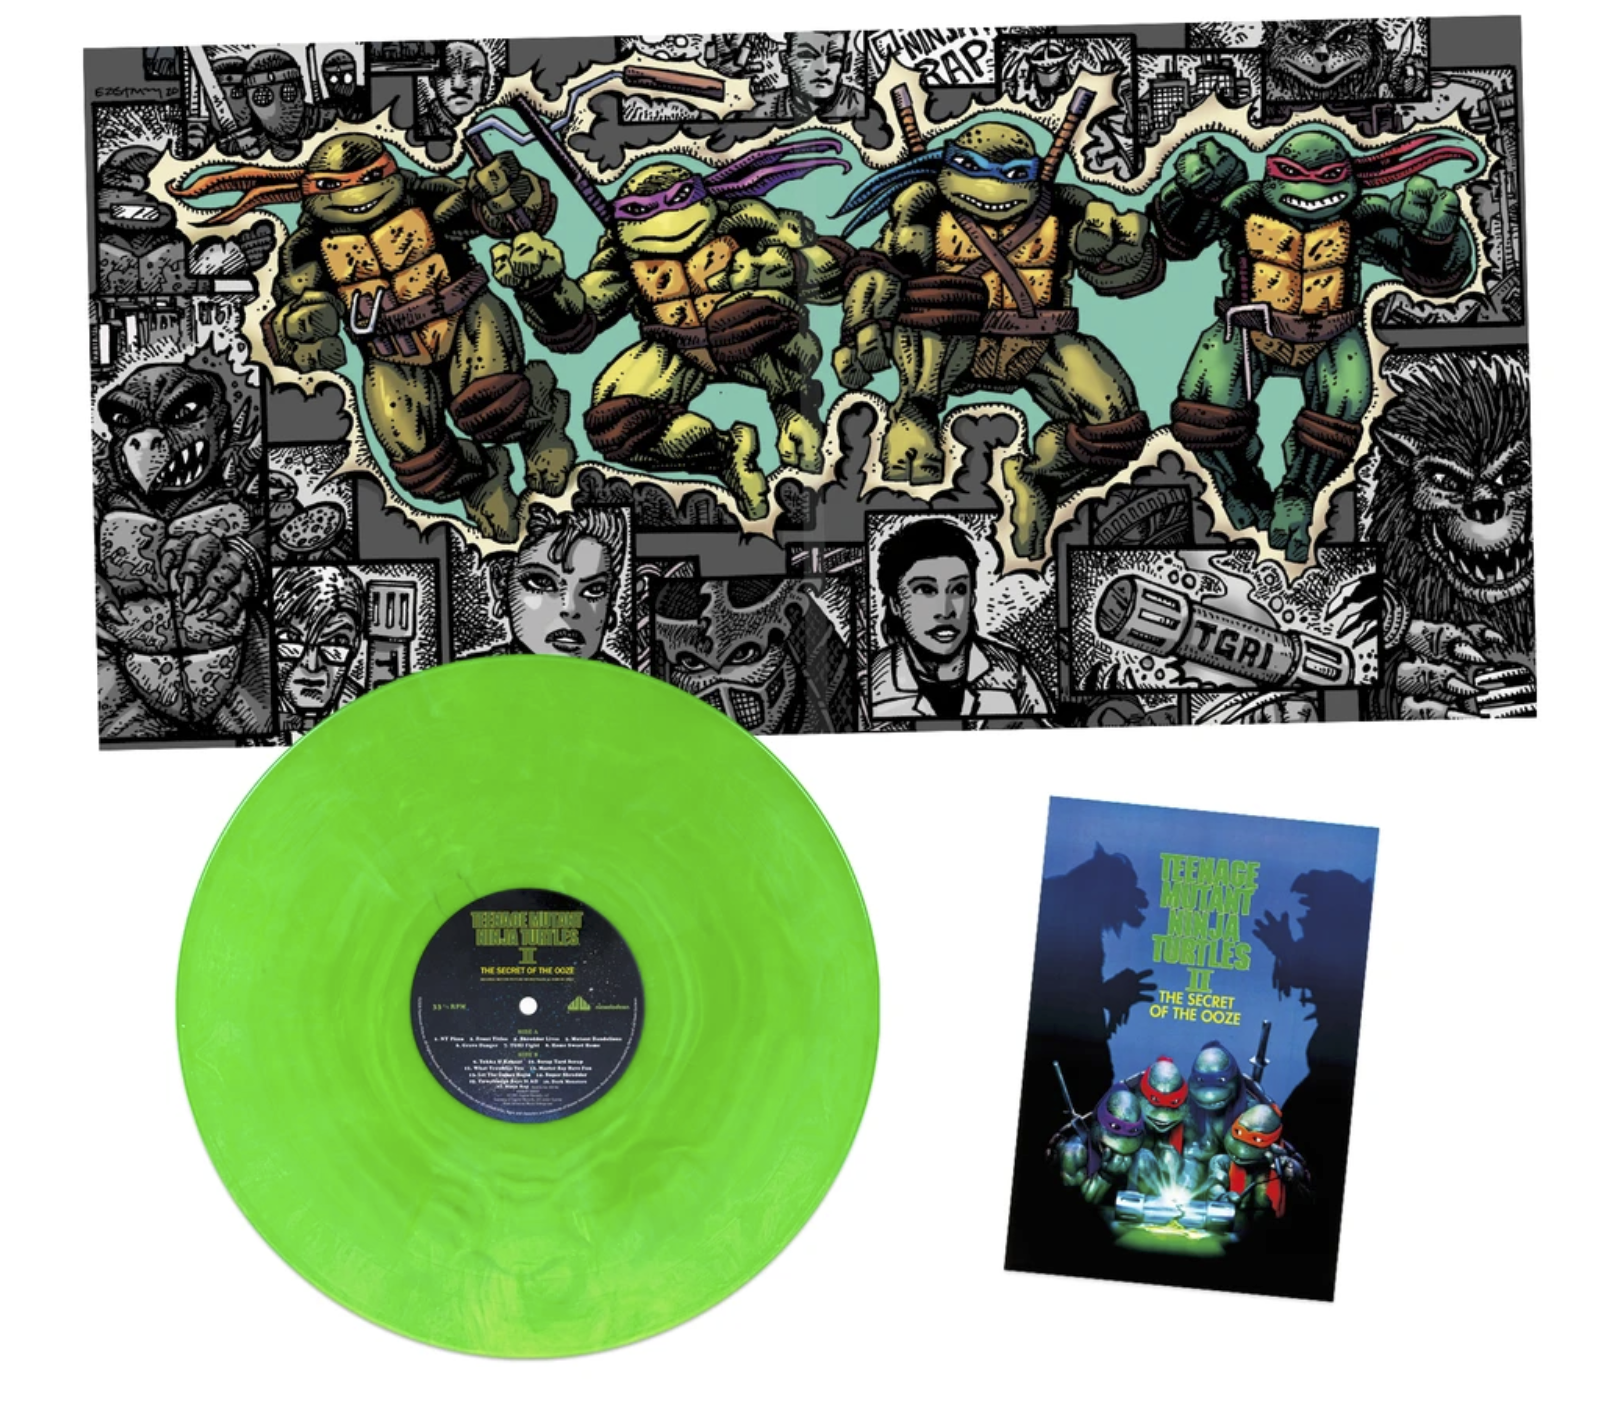 Teenage Mutant Ninja Turtles Part II: The Secret of the Ooze – SIGNED LP with BONUS Official TMNT Magazine